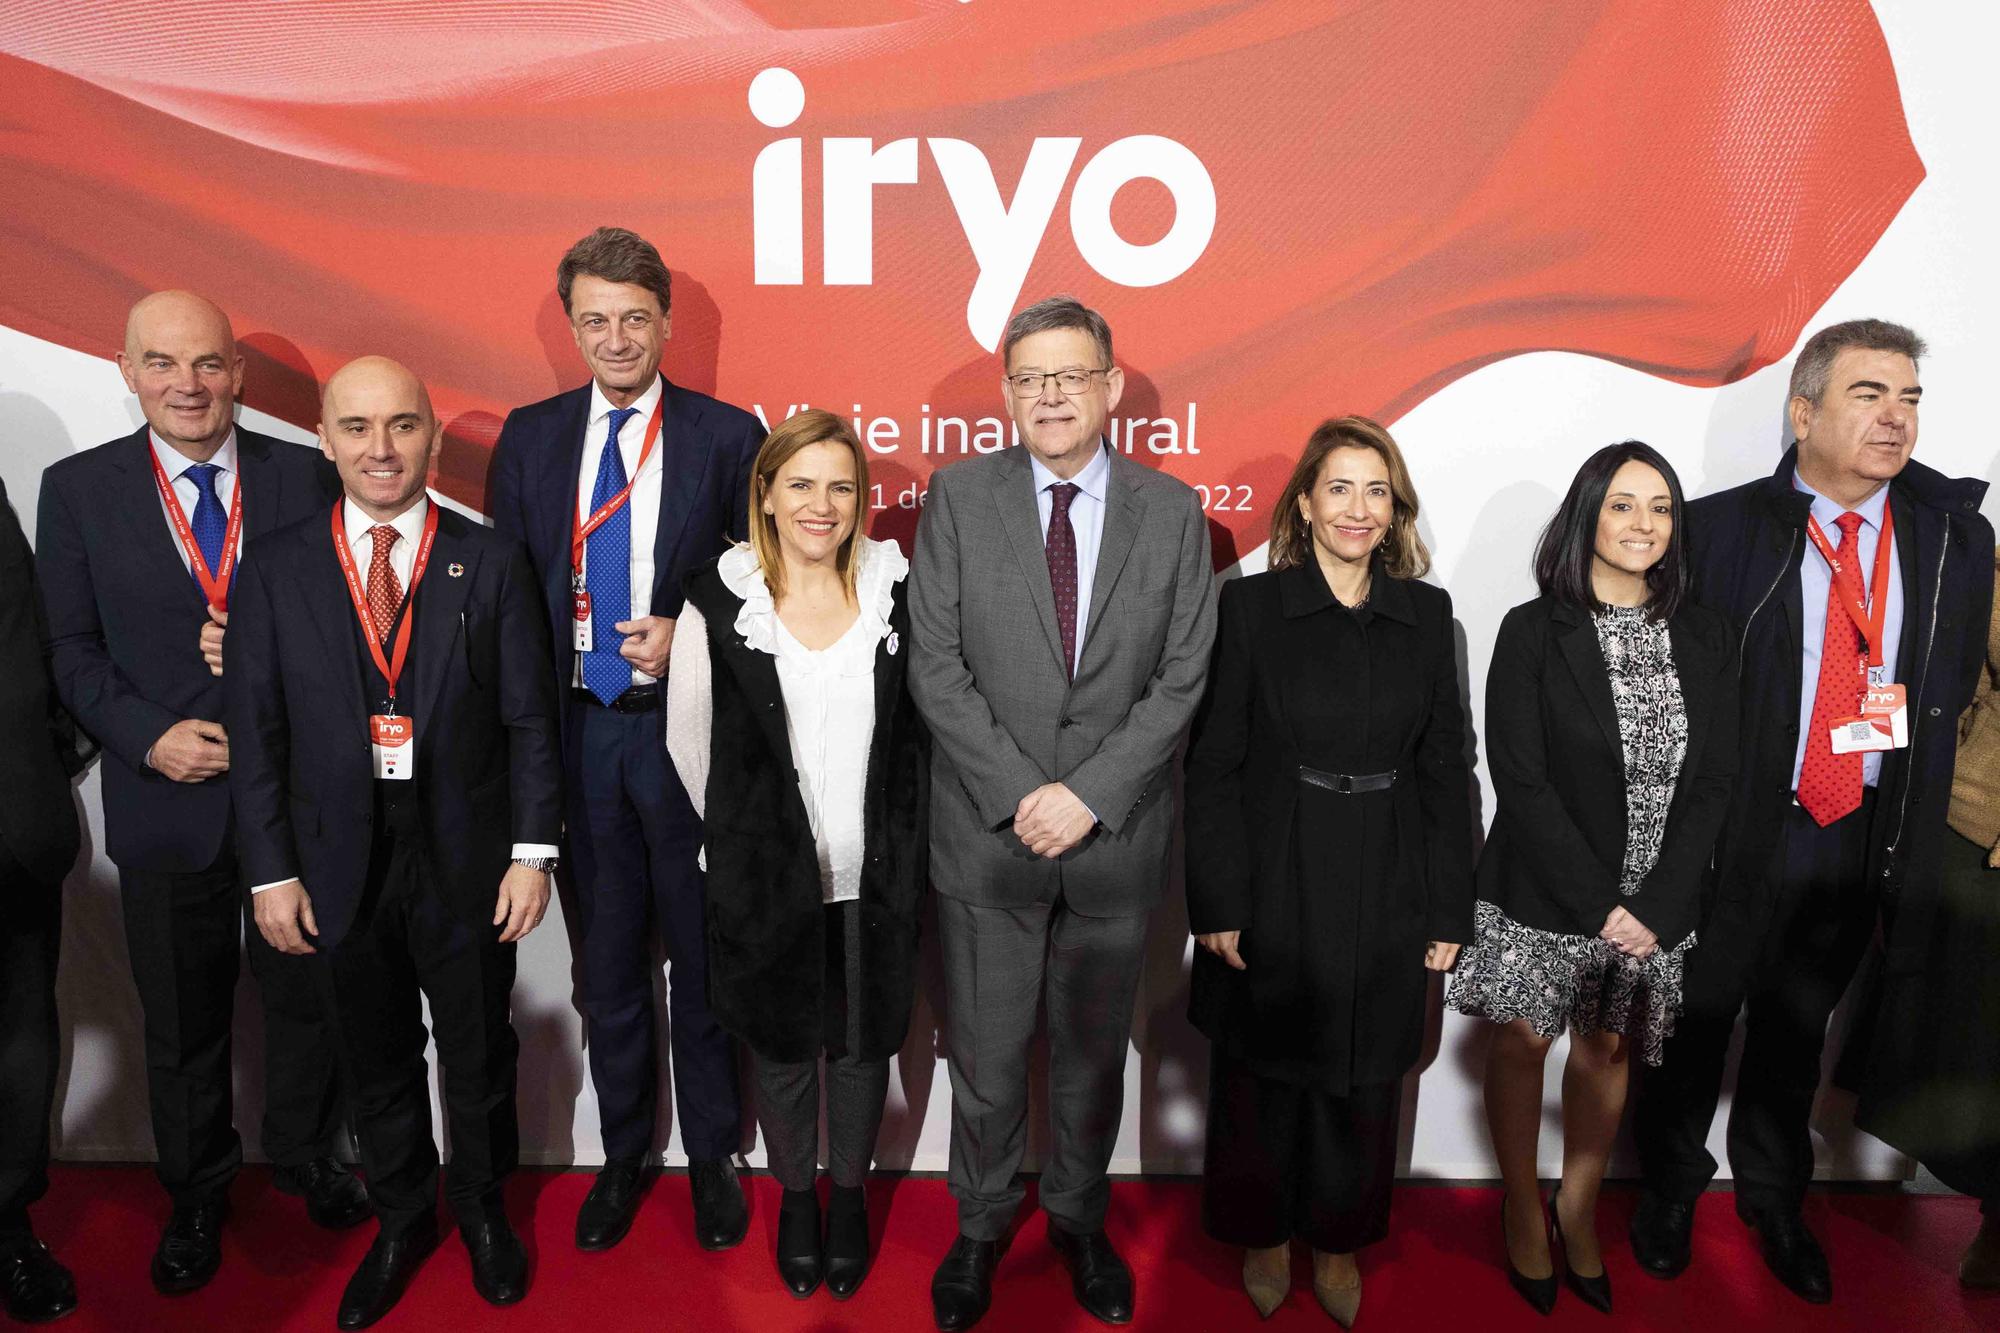 Iryo llega puntual en el viaje inaugural Madrid-València que comenzará a operar el 16 de diciembre